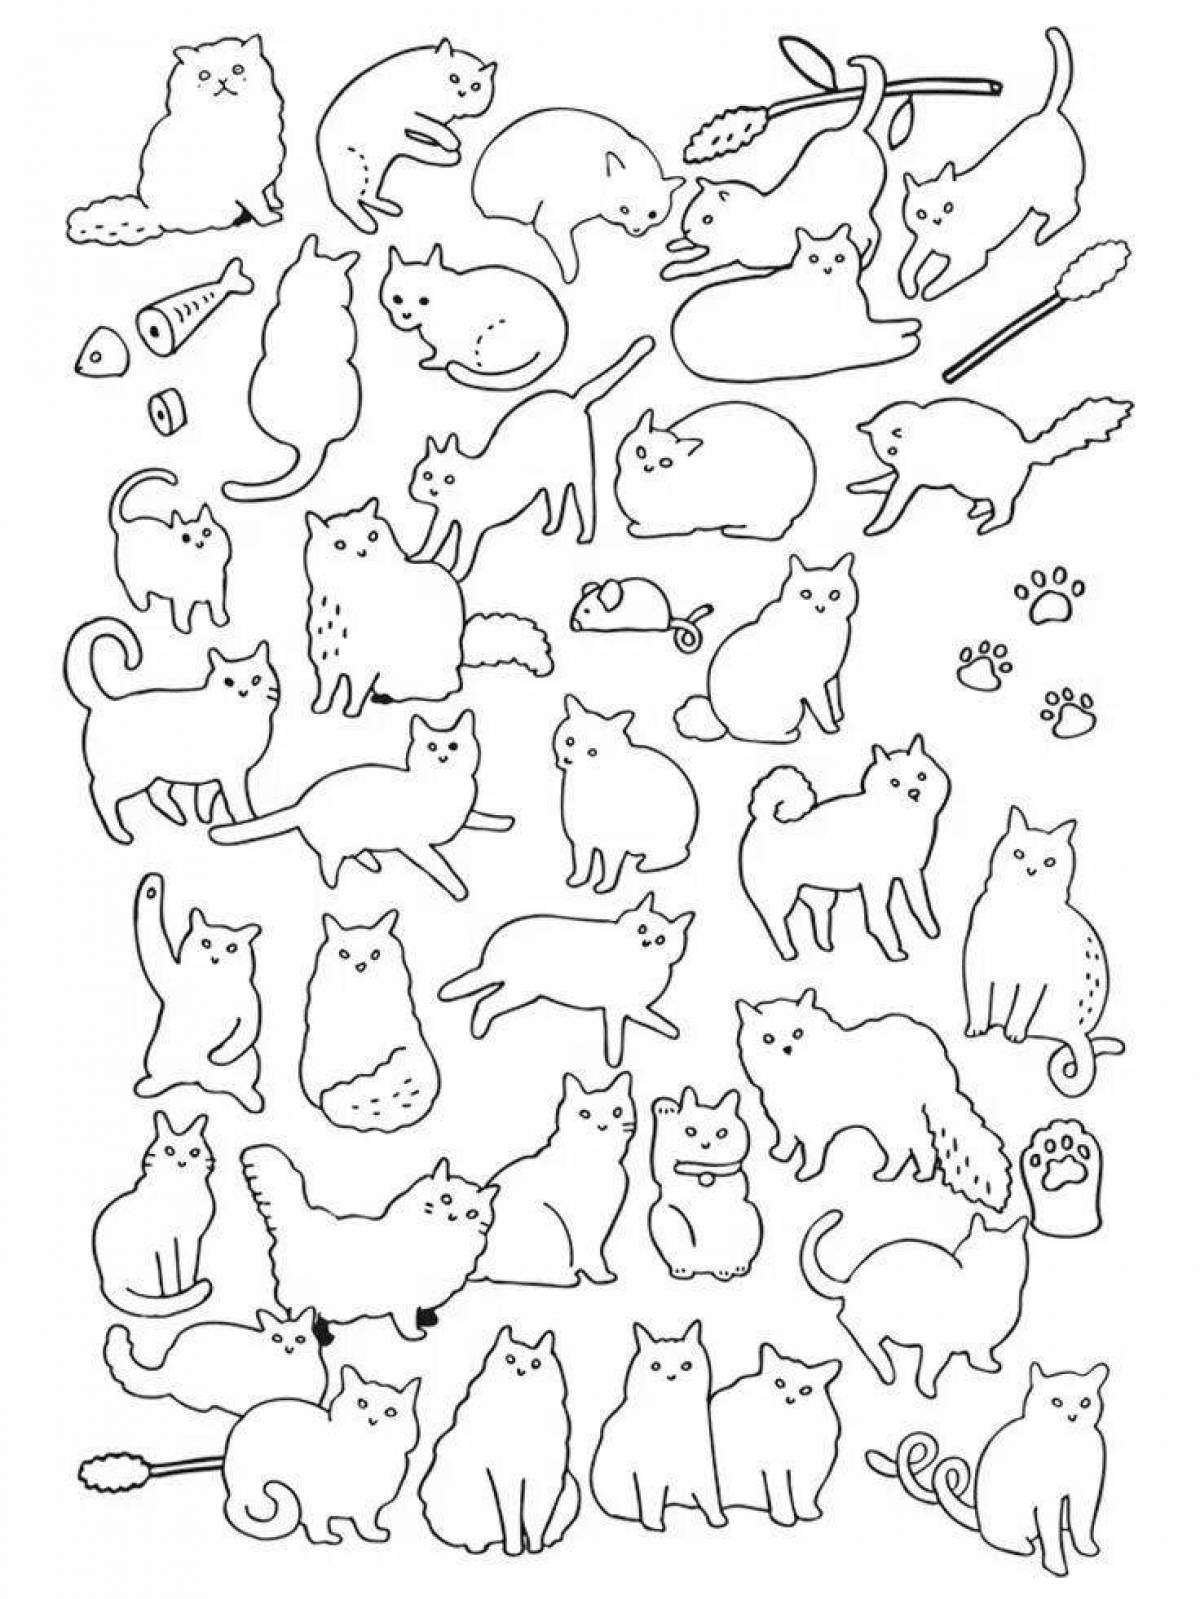 Many cats #10